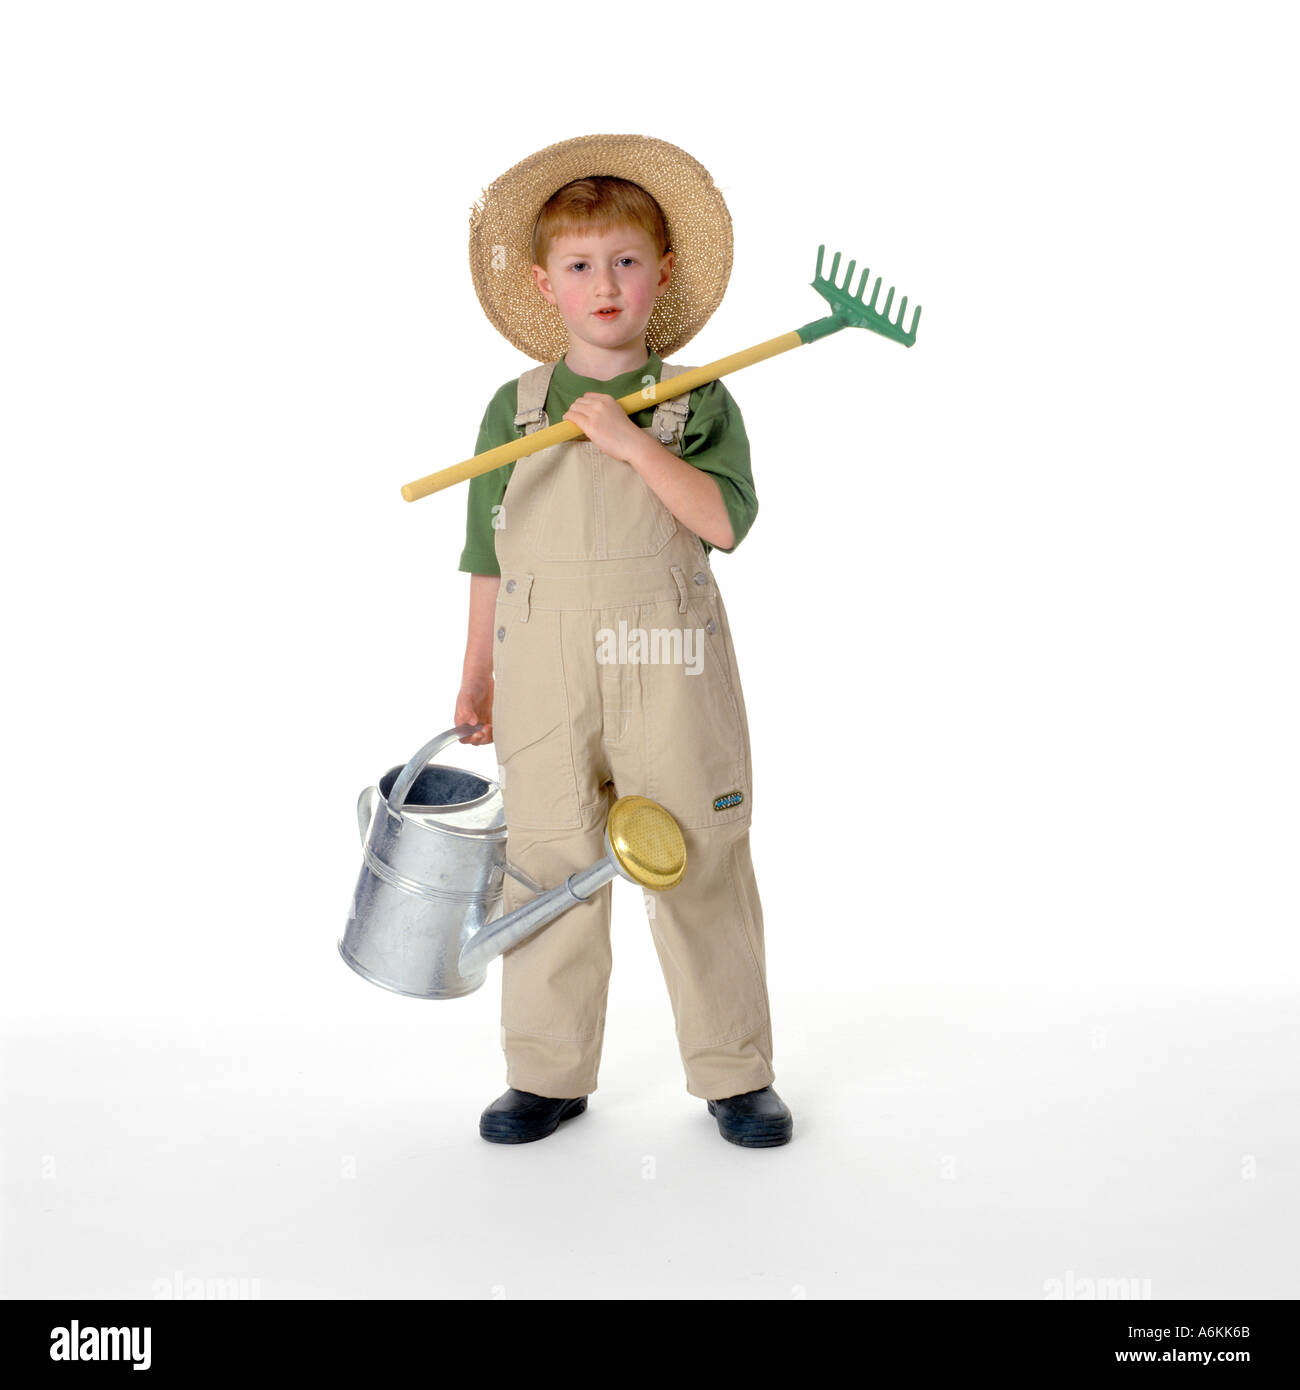 Little boy dressed as gardener Stock Photo